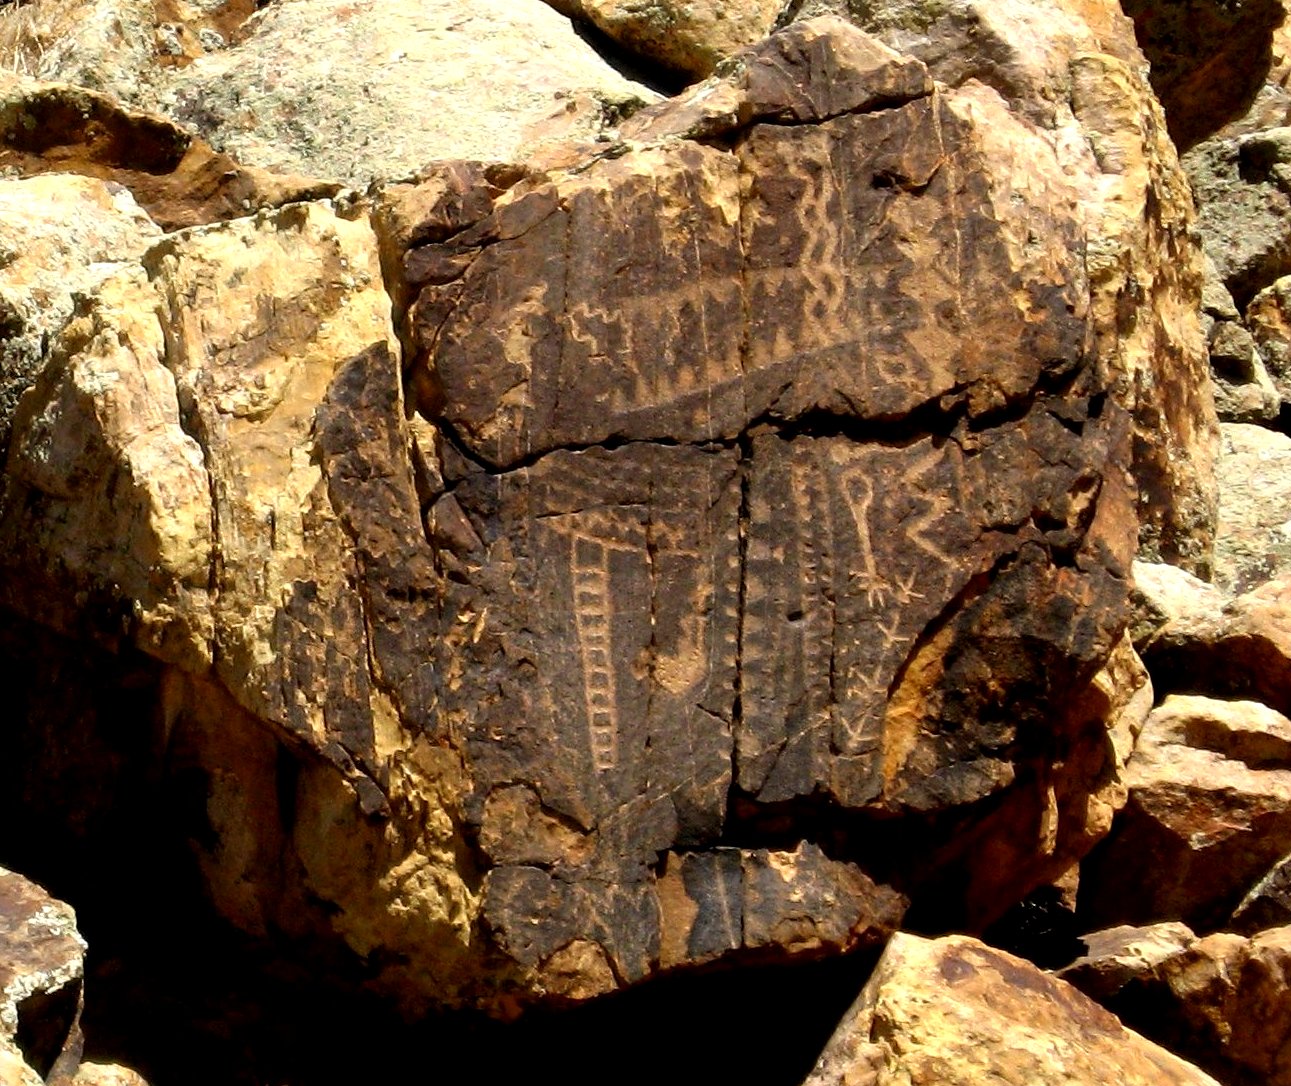 Parowan Gap petroglyphs in Utah